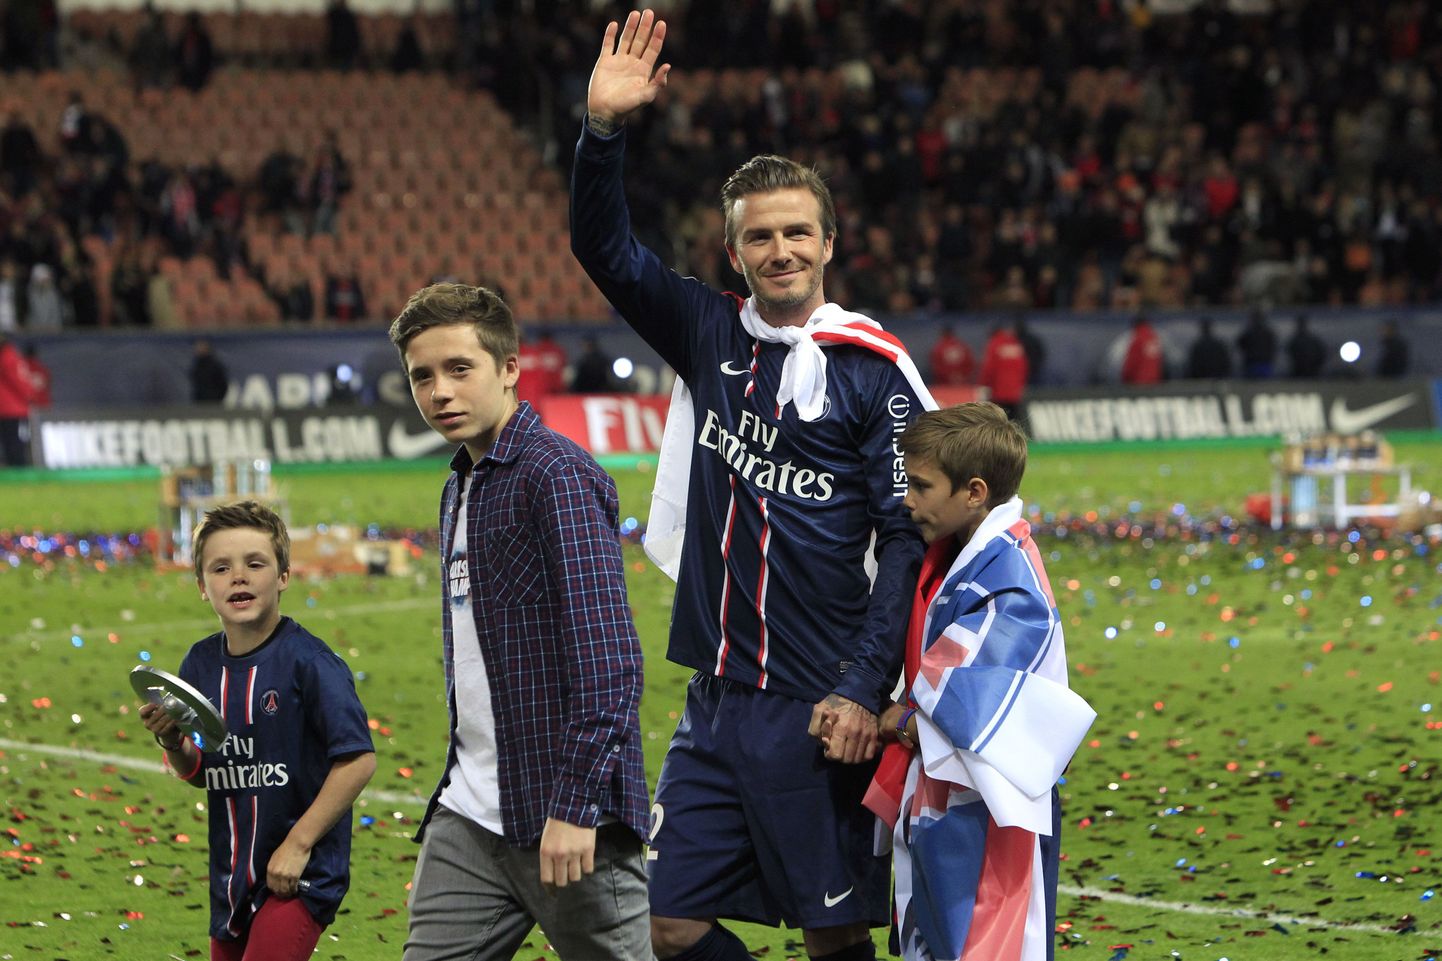 David Beckham lahkumismängul oma kolme pojaga: Cruz (vasakult), Brooklyn, ja Romeo James